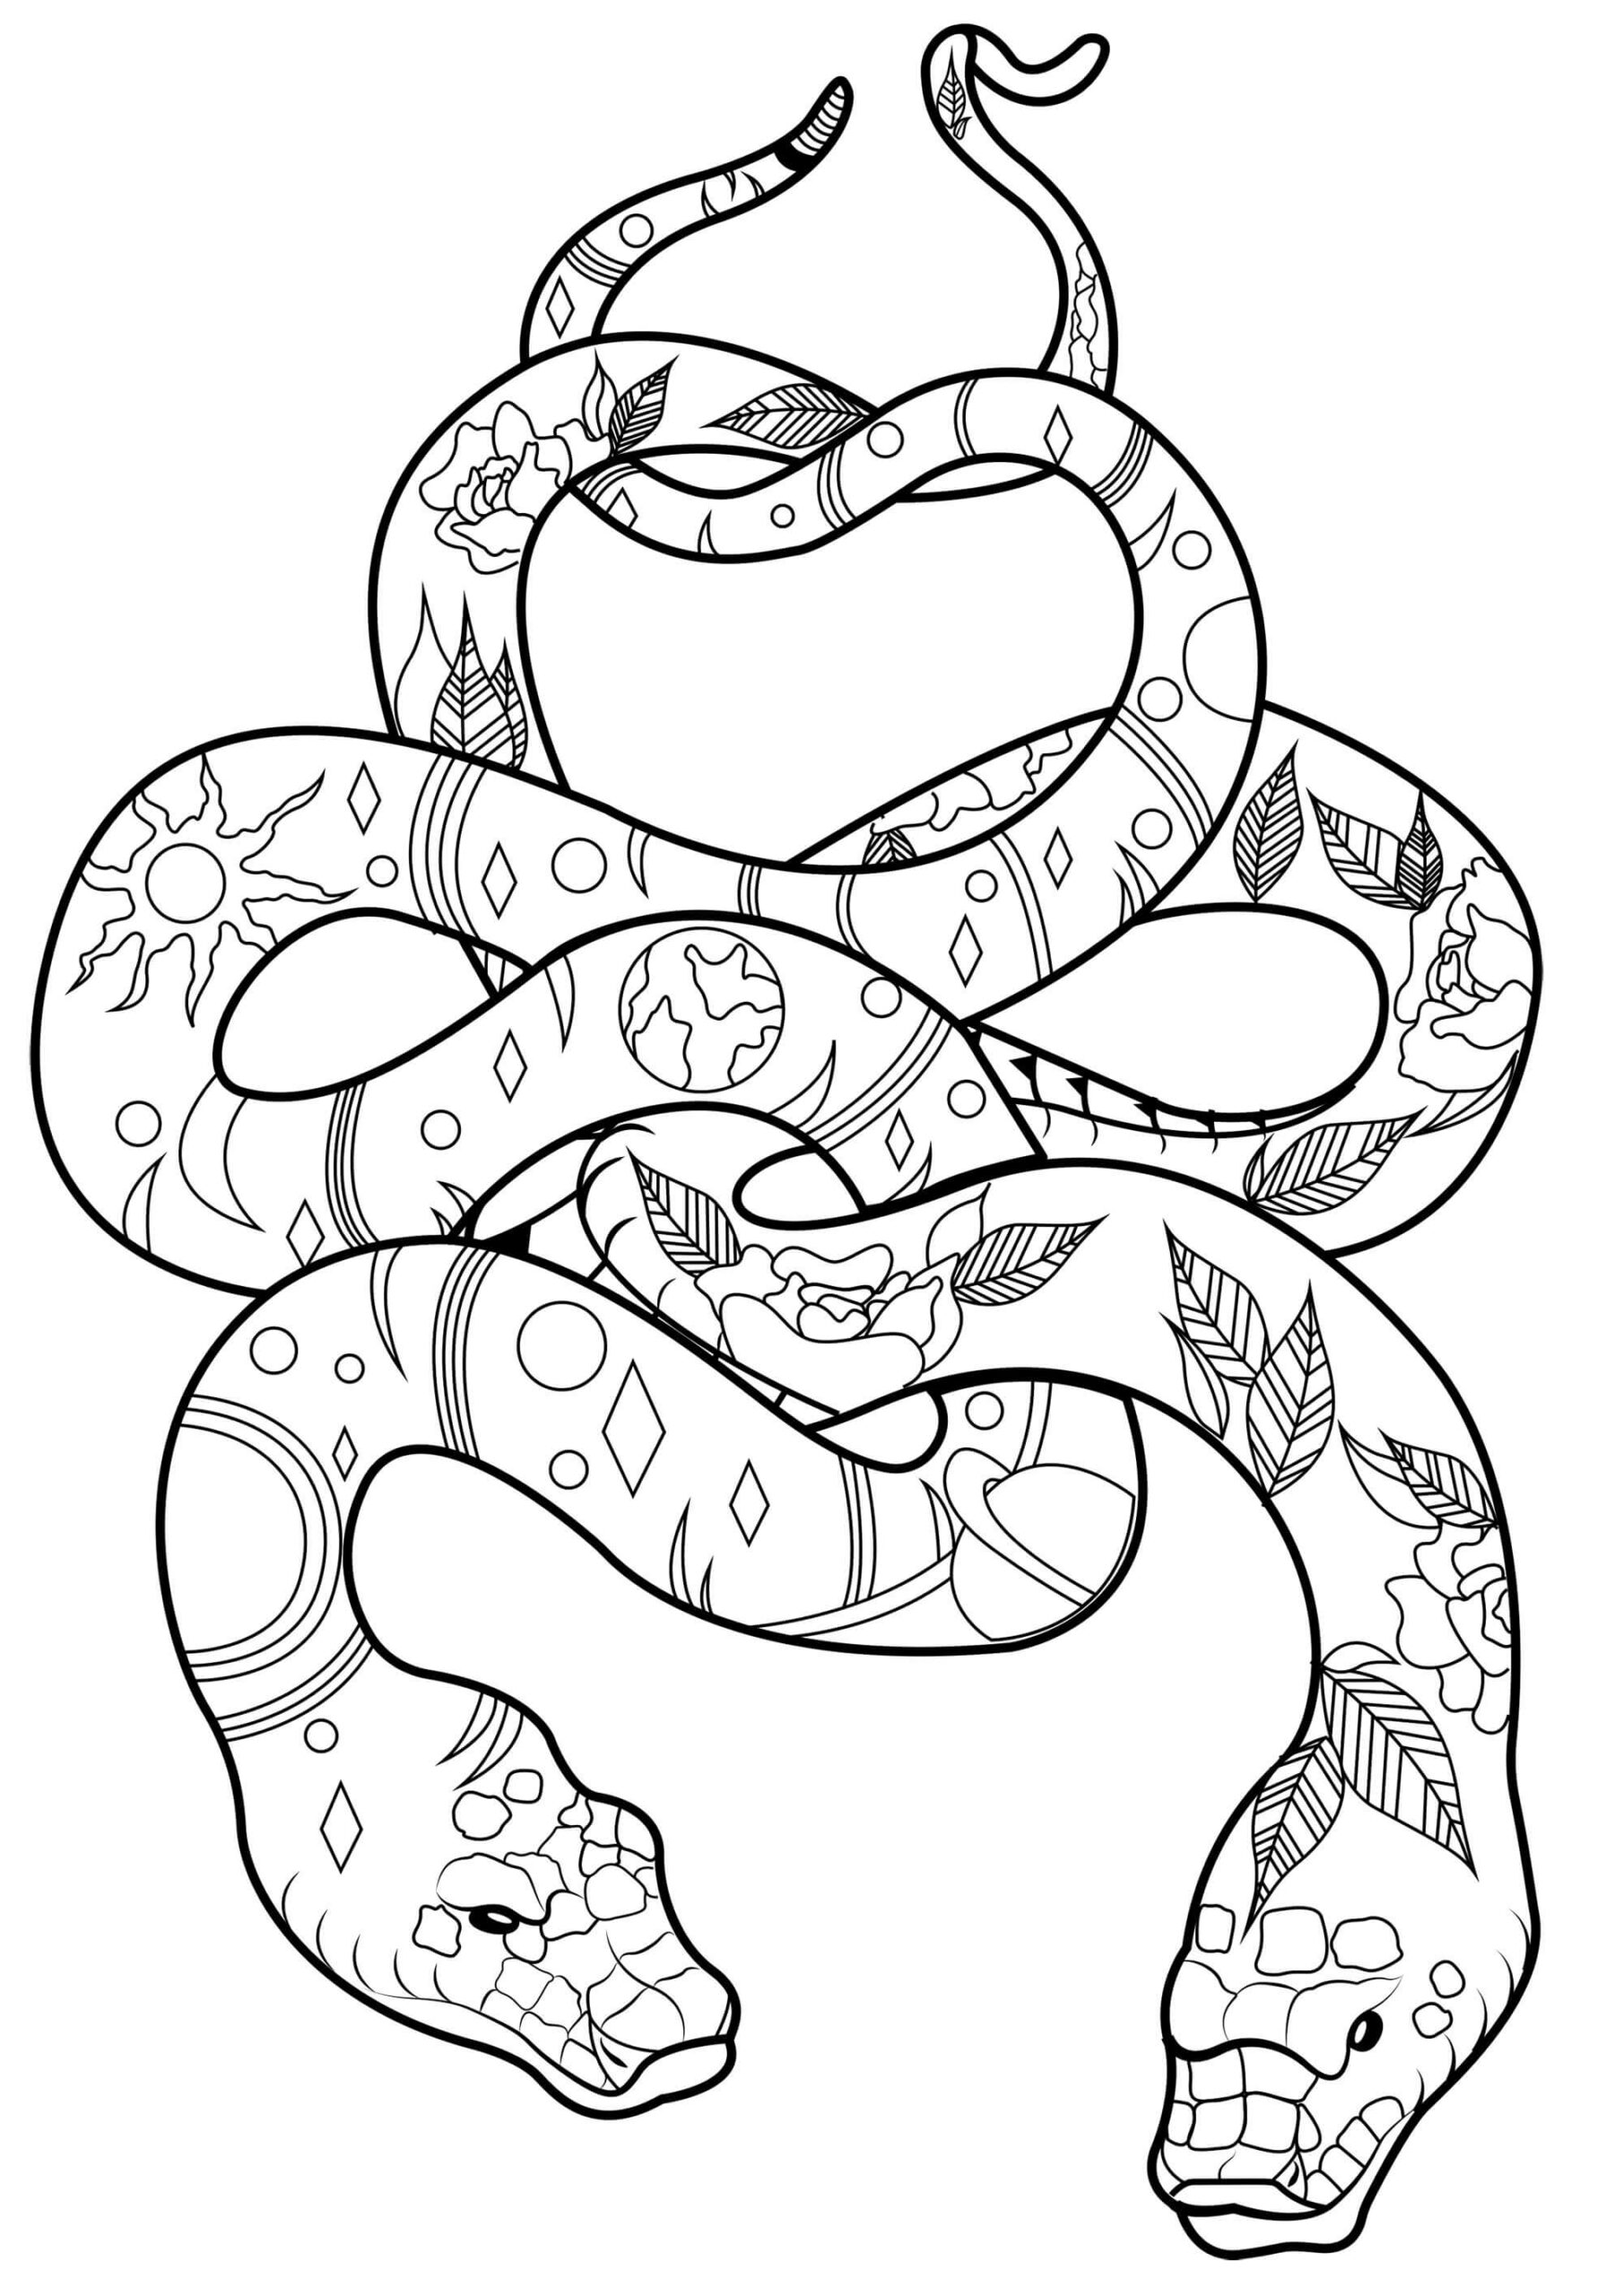 Dibujos de Dos Serpientes para colorear